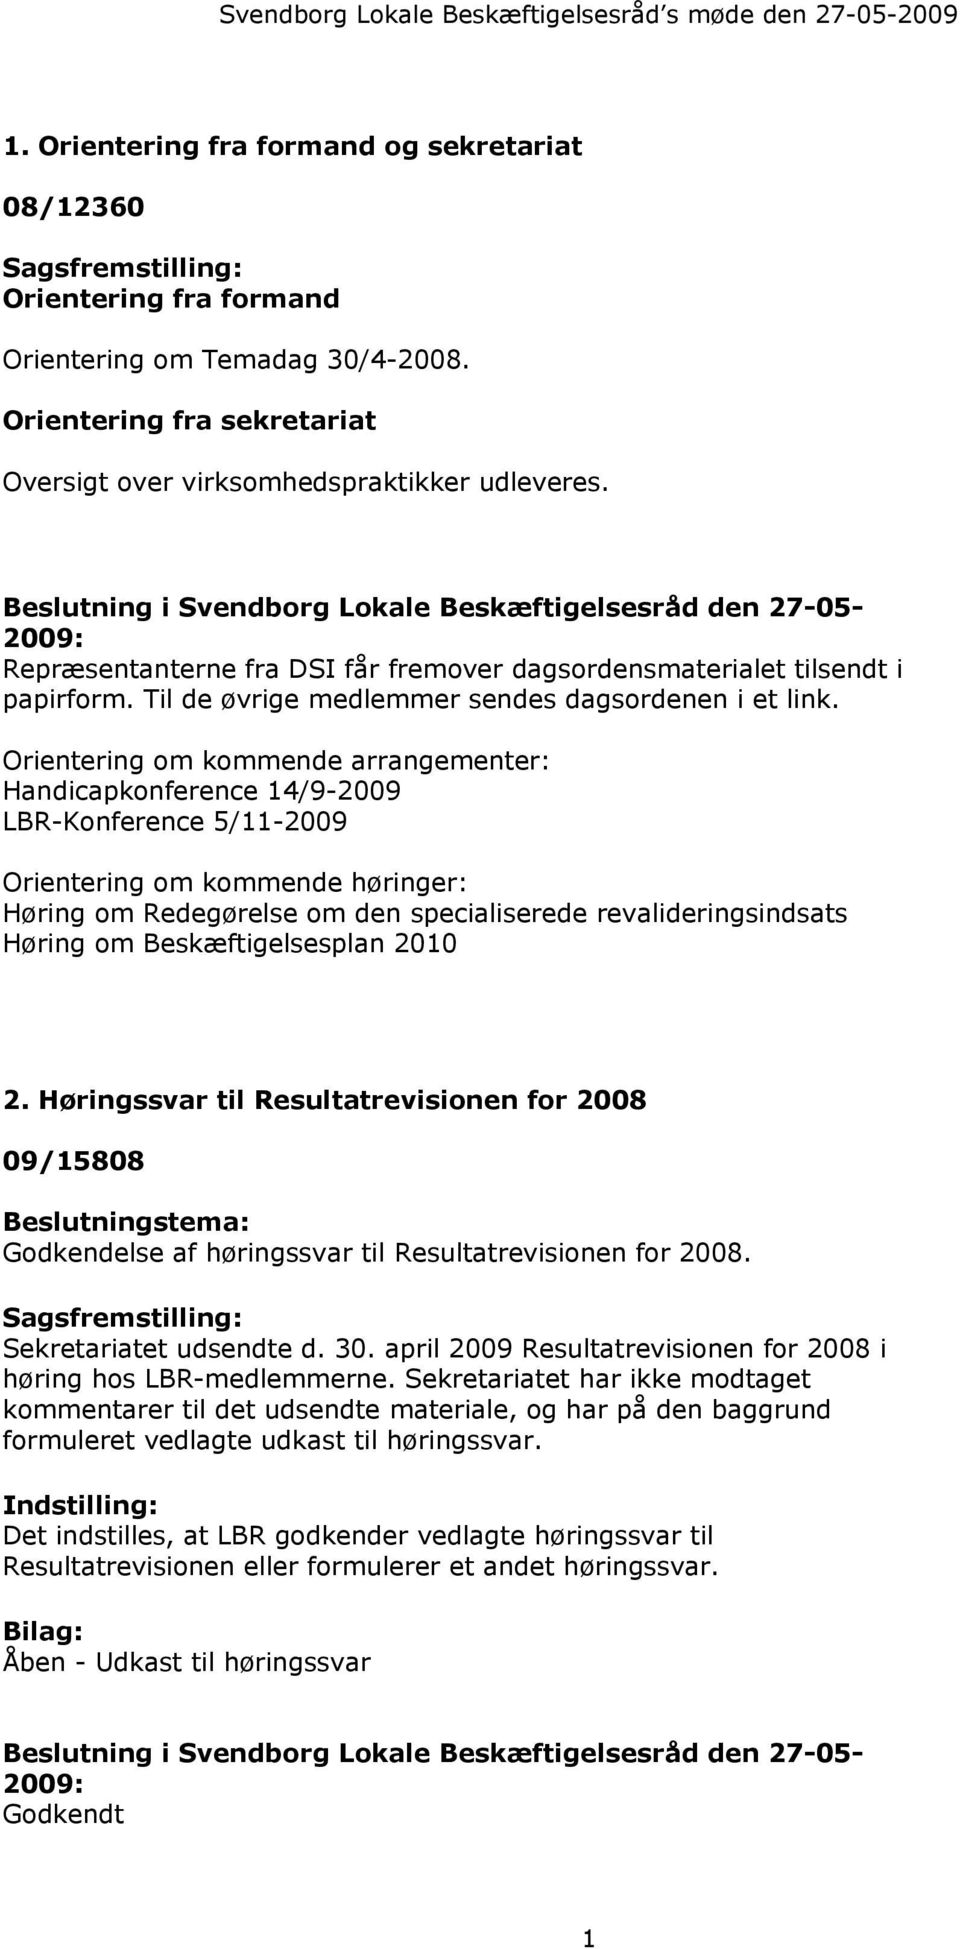 Beslutning i Svendborg Lokale Beskæftigelsesråd den 27-05- 2009: Repræsentanterne fra DSI får fremover dagsordensmaterialet tilsendt i papirform. Til de øvrige medlemmer sendes dagsordenen i et link.